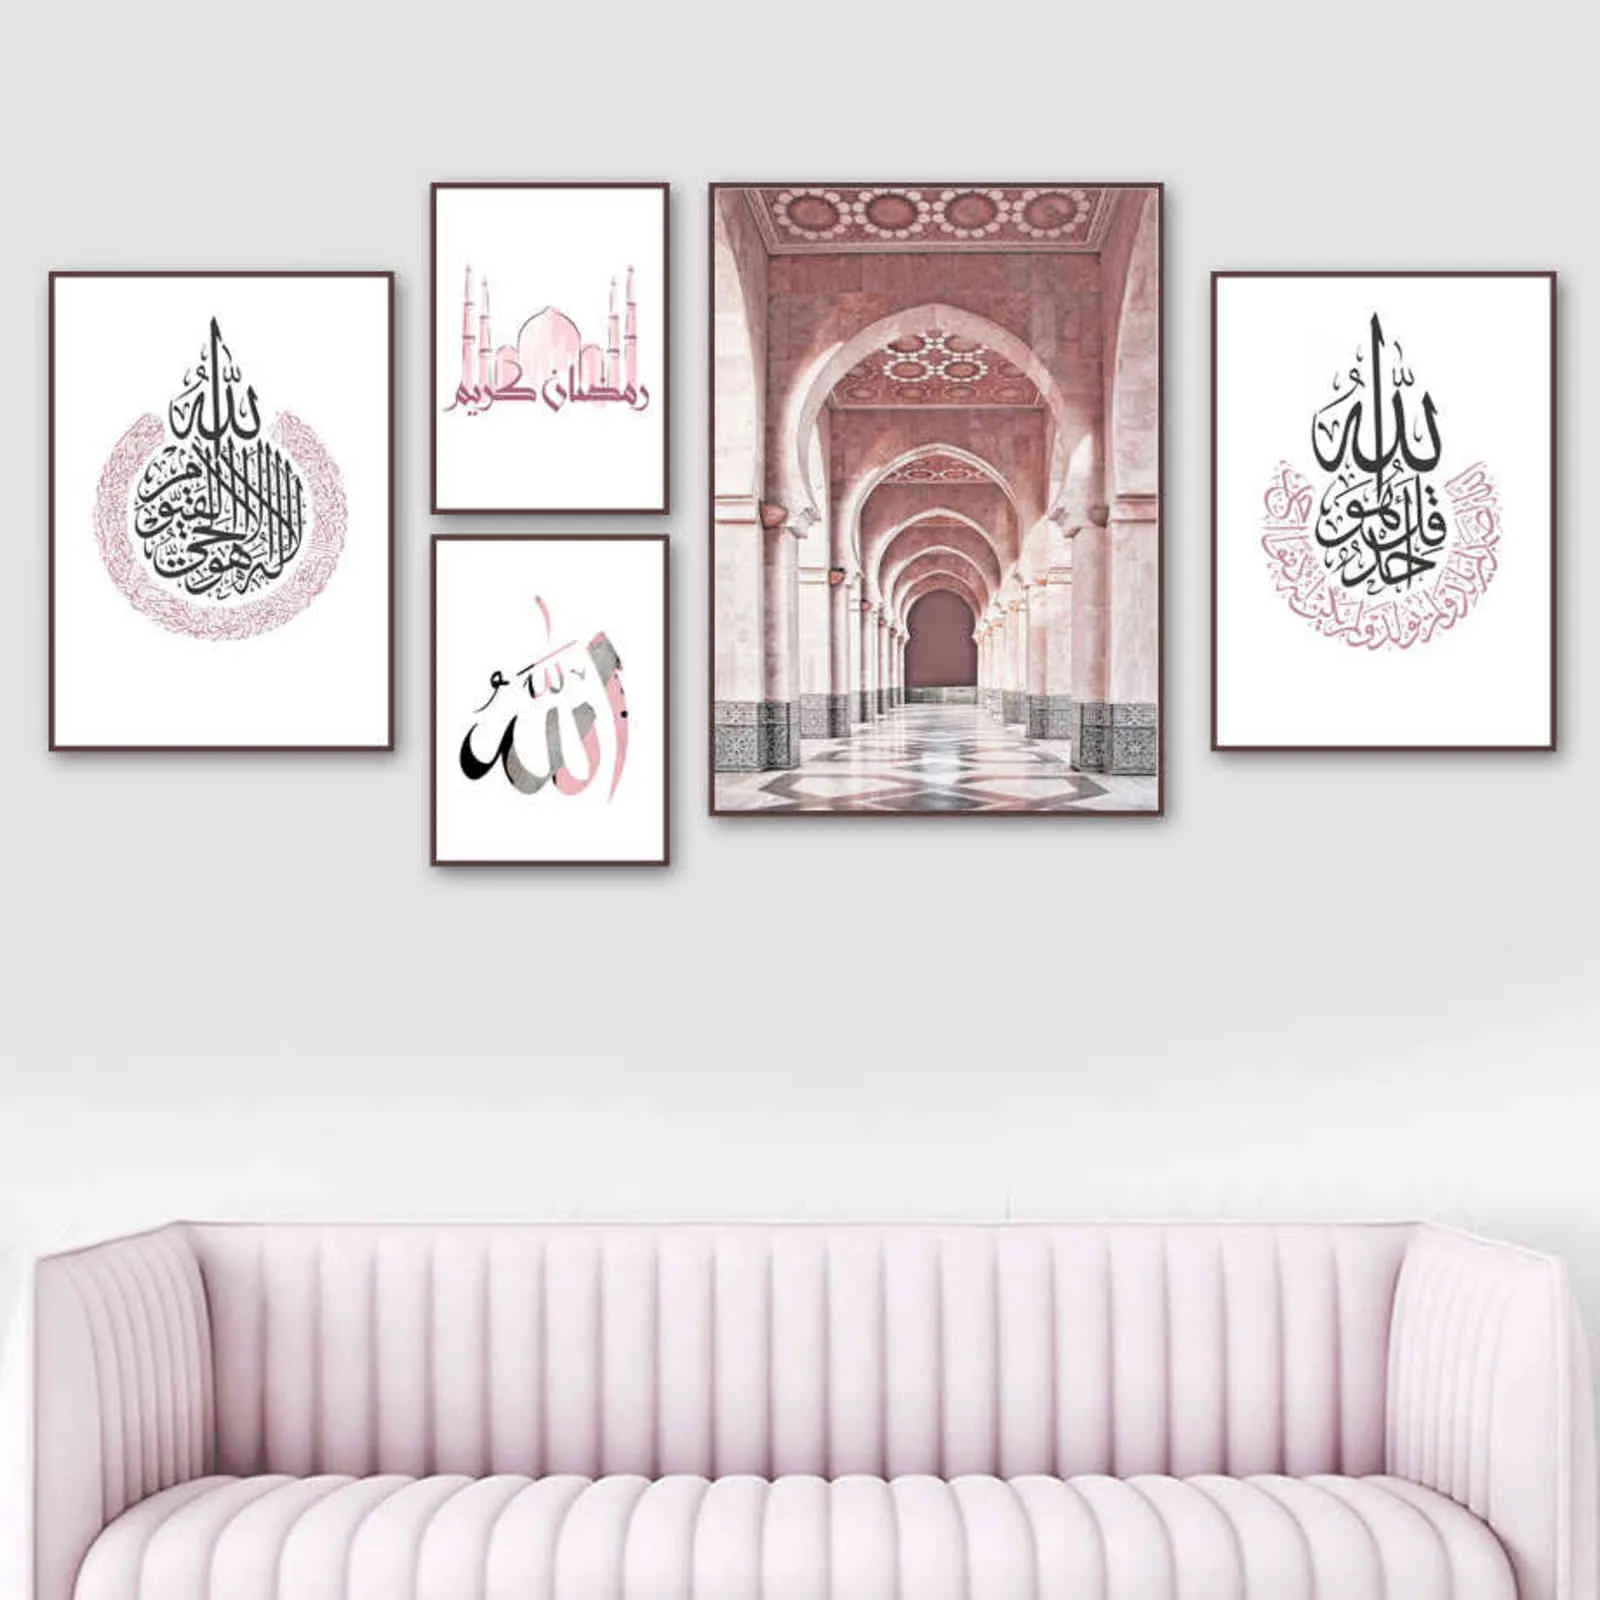 Marokkaanse Moskee Arabische kalligrafie Islamitische Poster Wall Art Print Canvas Schilderij Nordic Wall Pictures voor Woonkamer Decoratie H1110